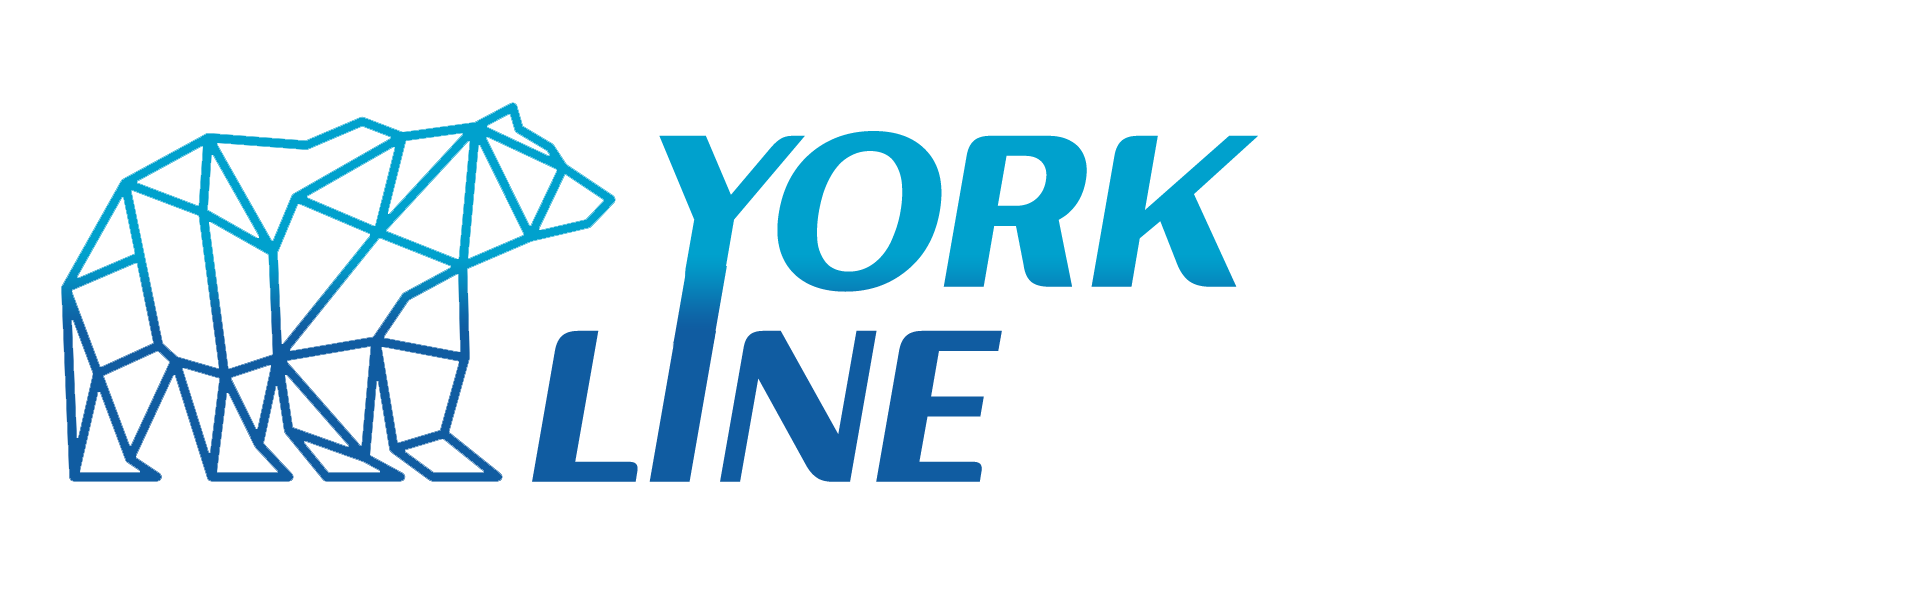 Системы кондиционирования Йорк York